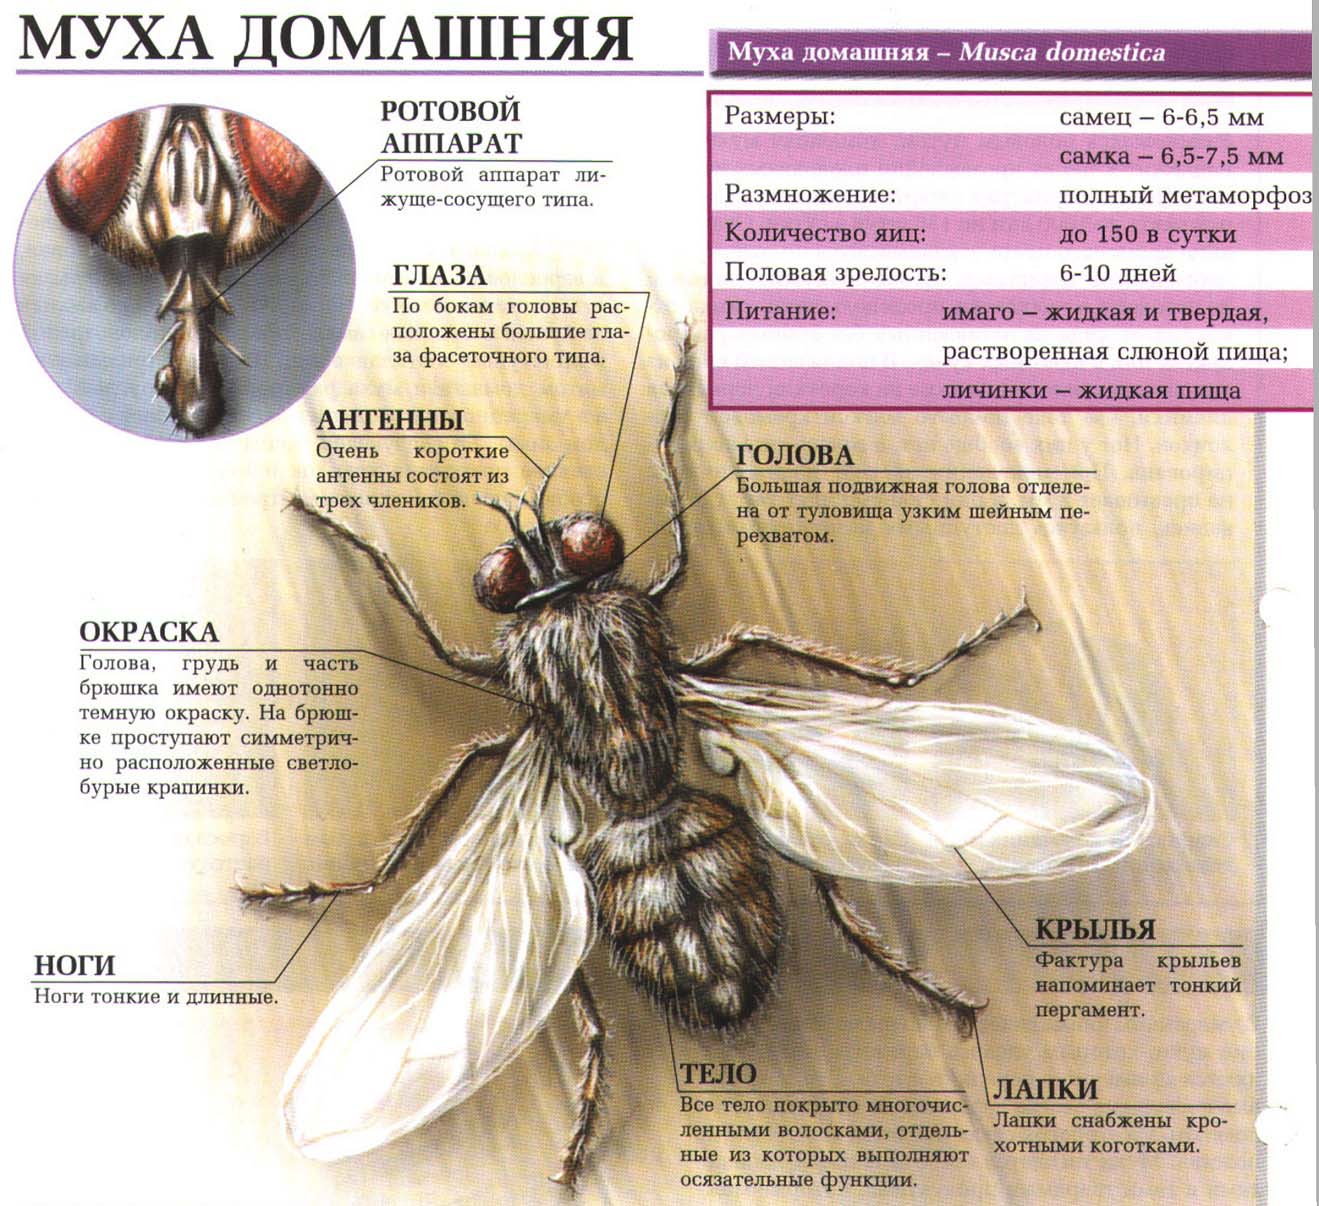 Описание домашней мухи.